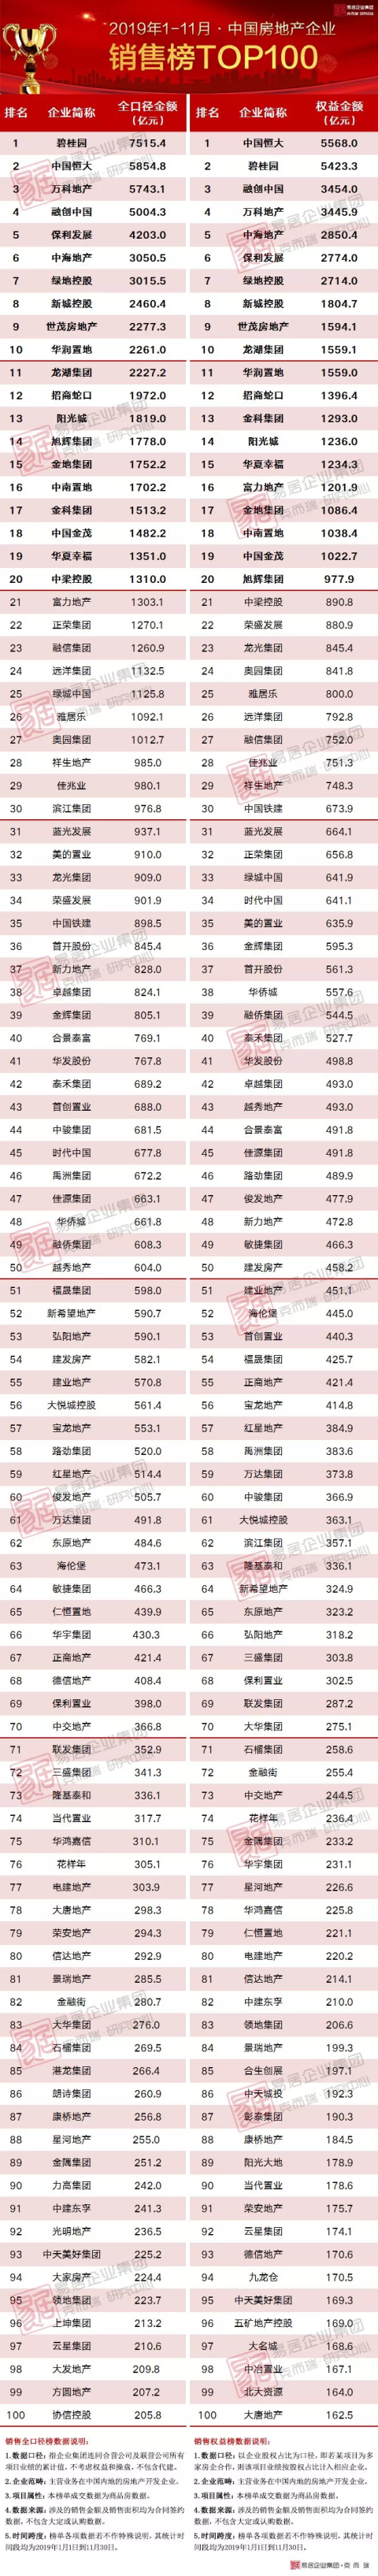 最新数据!2019年1-11月中国房企销售TOP100排行榜